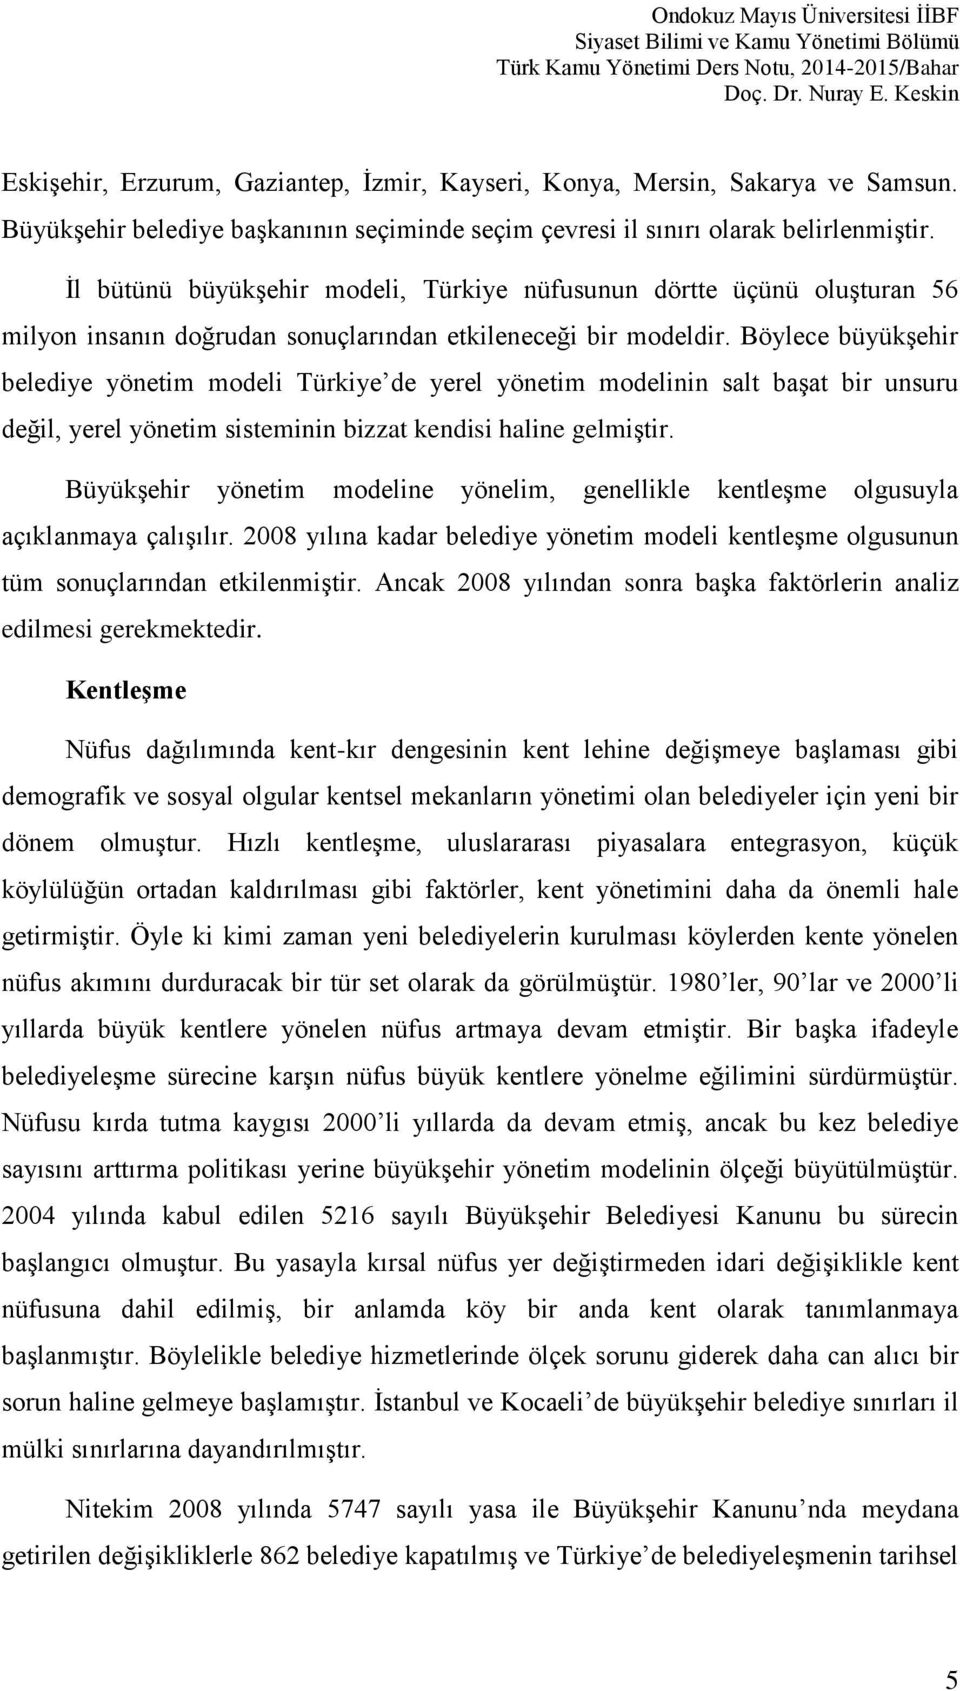 Böylece büyükşehir belediye yönetim modeli Türkiye de yerel yönetim modelinin salt başat bir unsuru değil, yerel yönetim sisteminin bizzat kendisi haline gelmiştir.